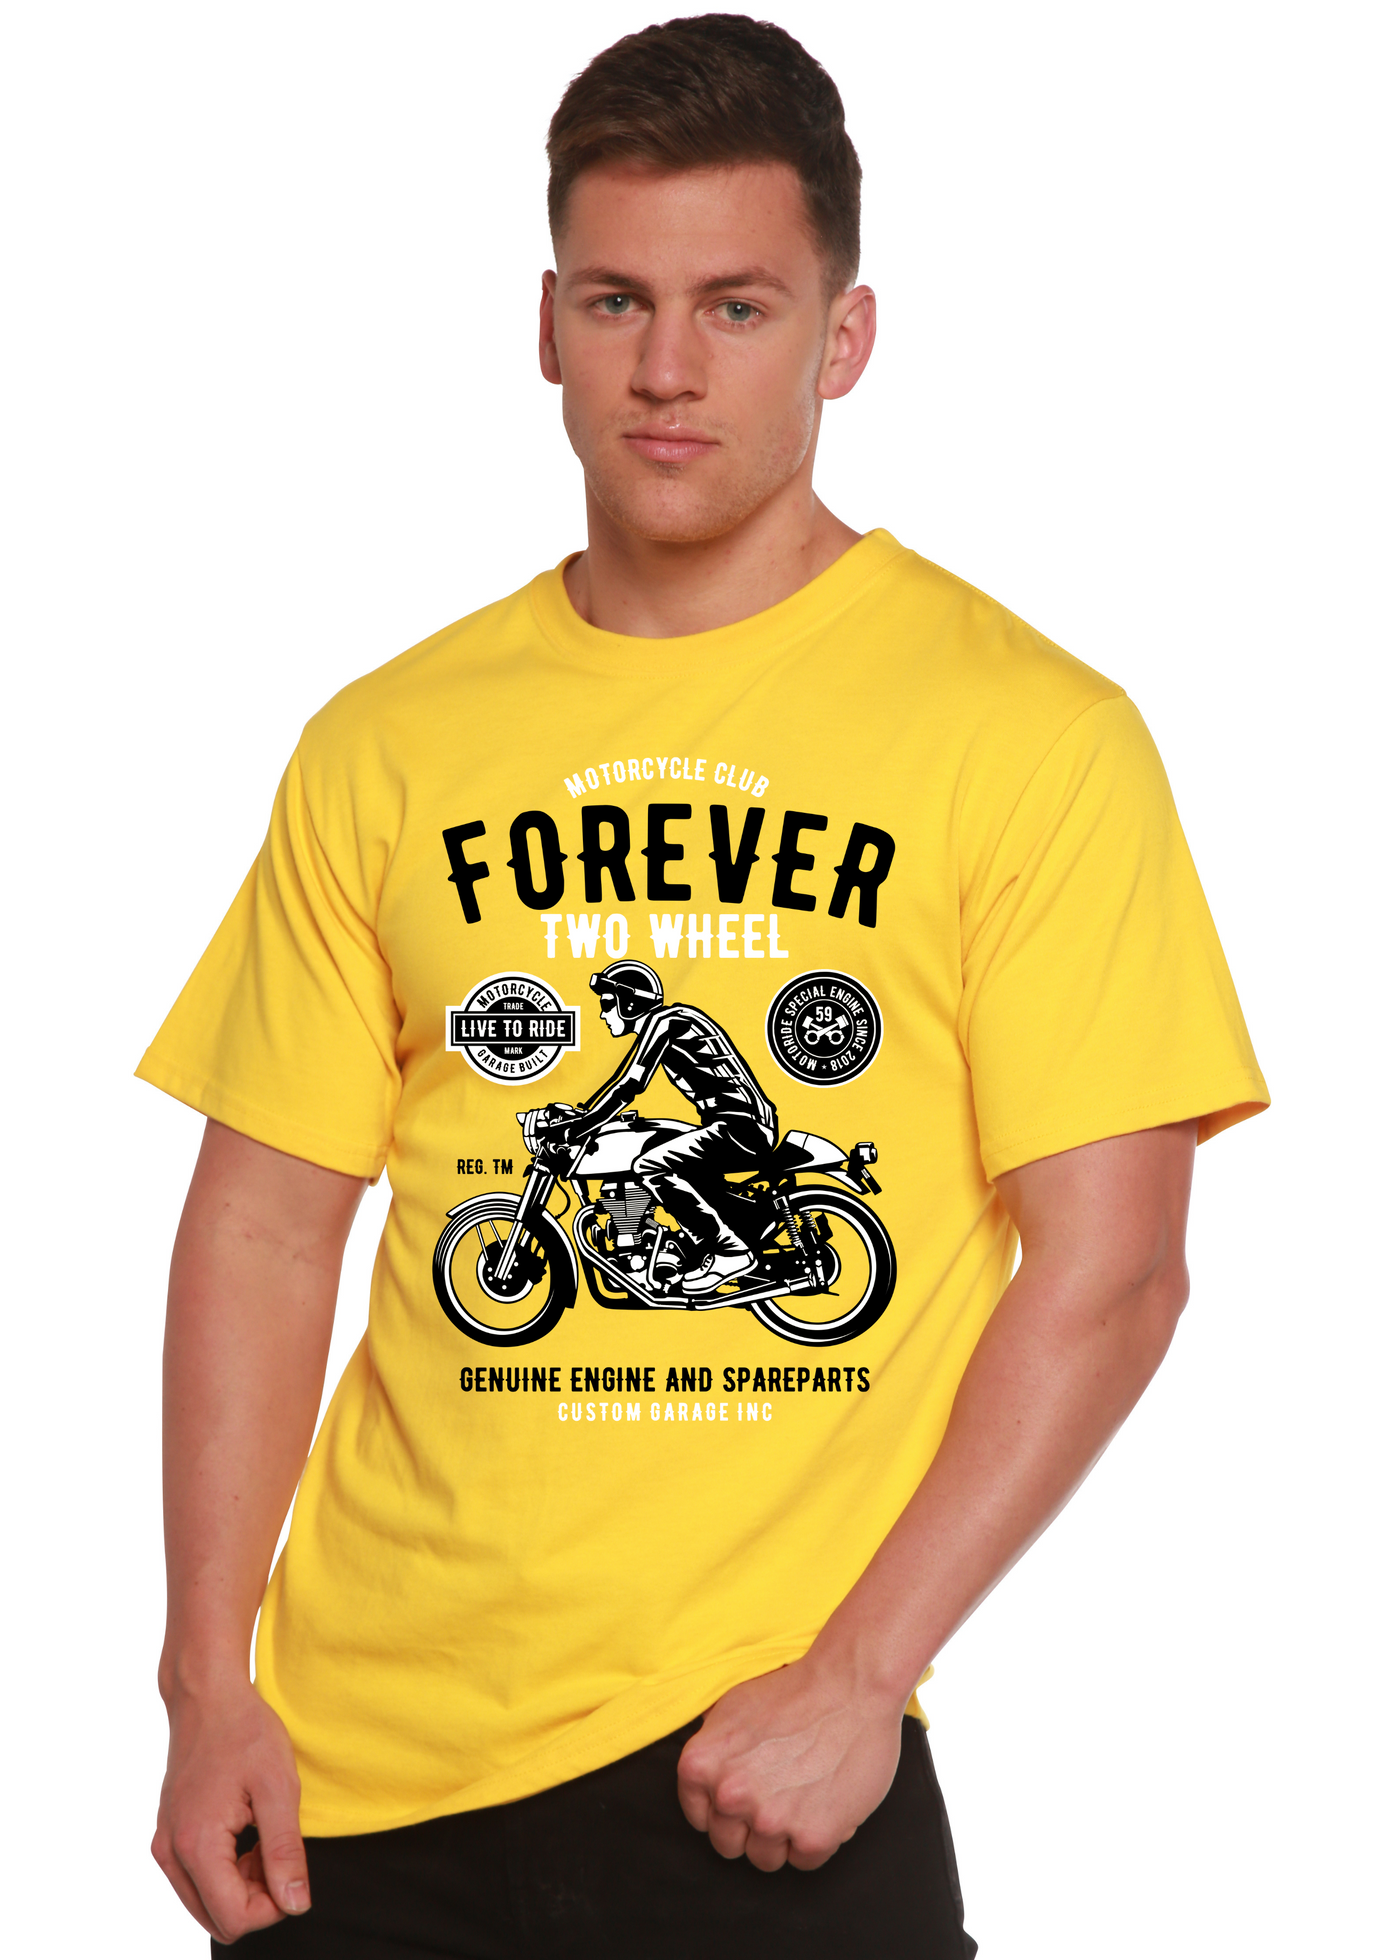 Forever Two Wheel men's bamboo tshirt lemon chrome